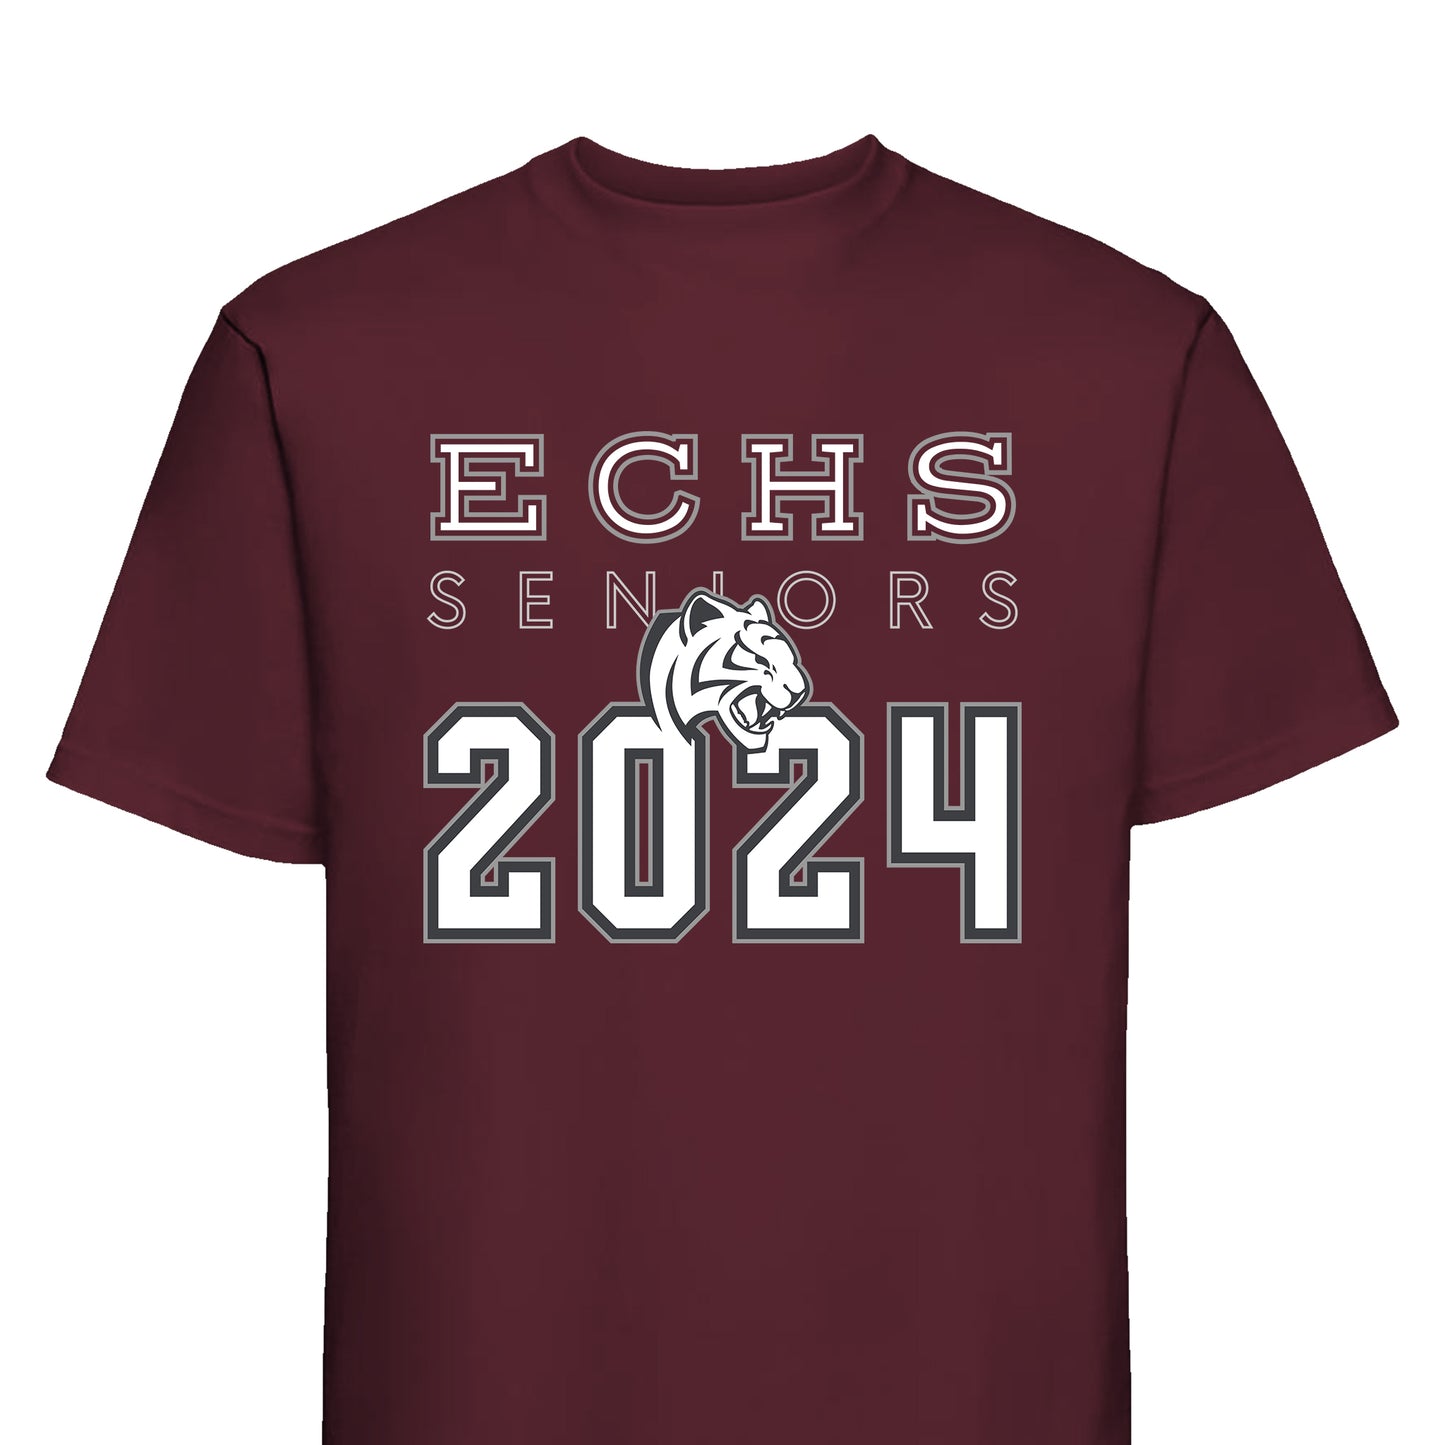 ECHS "Class of 2024" Graphic T-Shirt